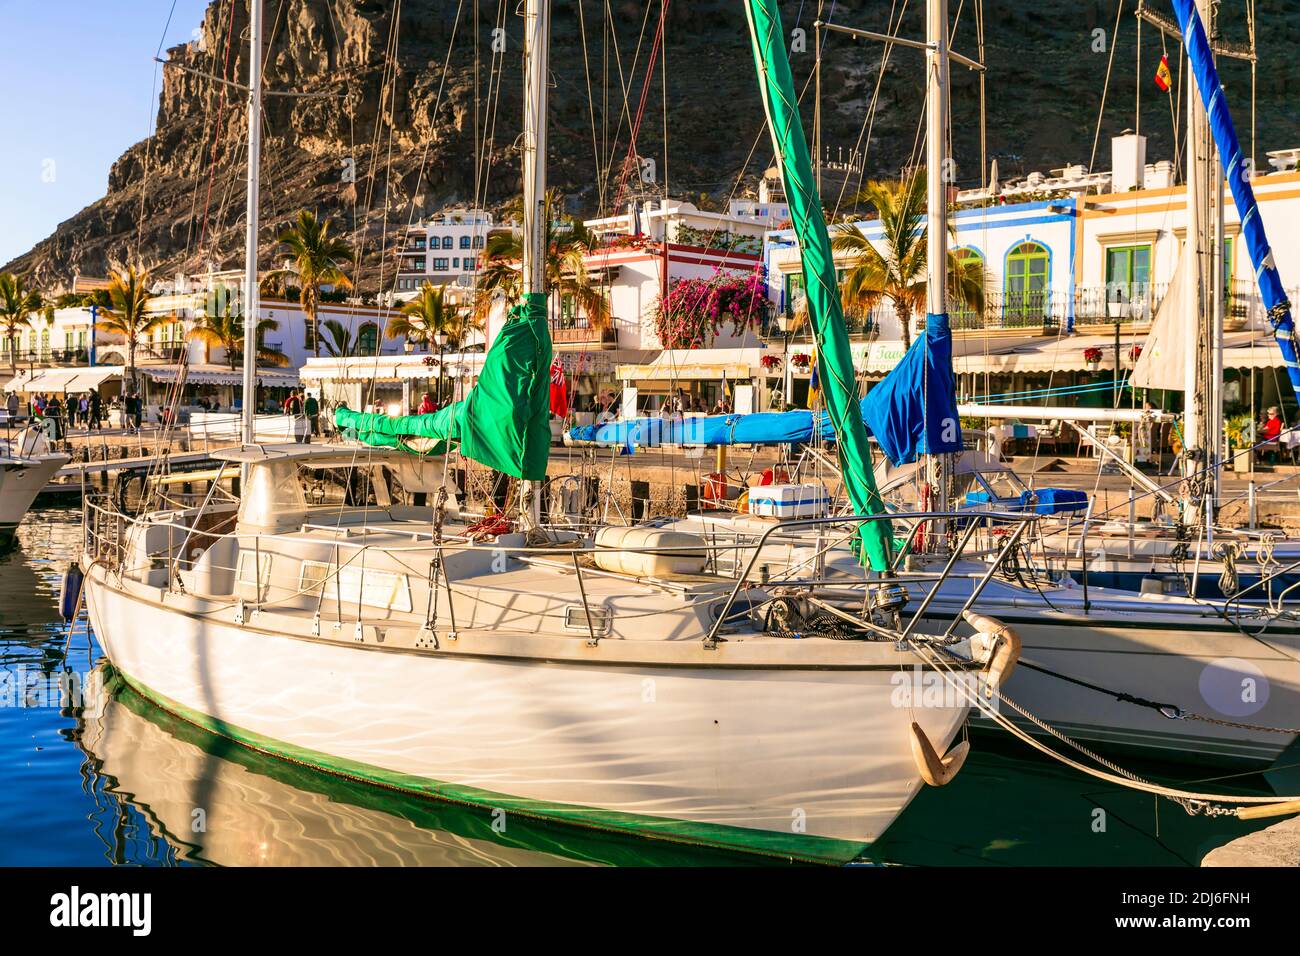 Gran Canaria (Gran Canaria). Pintoresco pueblo de Puerto de Mogan. Vista con veleros.destino turístico famoso. Islas Canarias, enero de 2019 Foto de stock